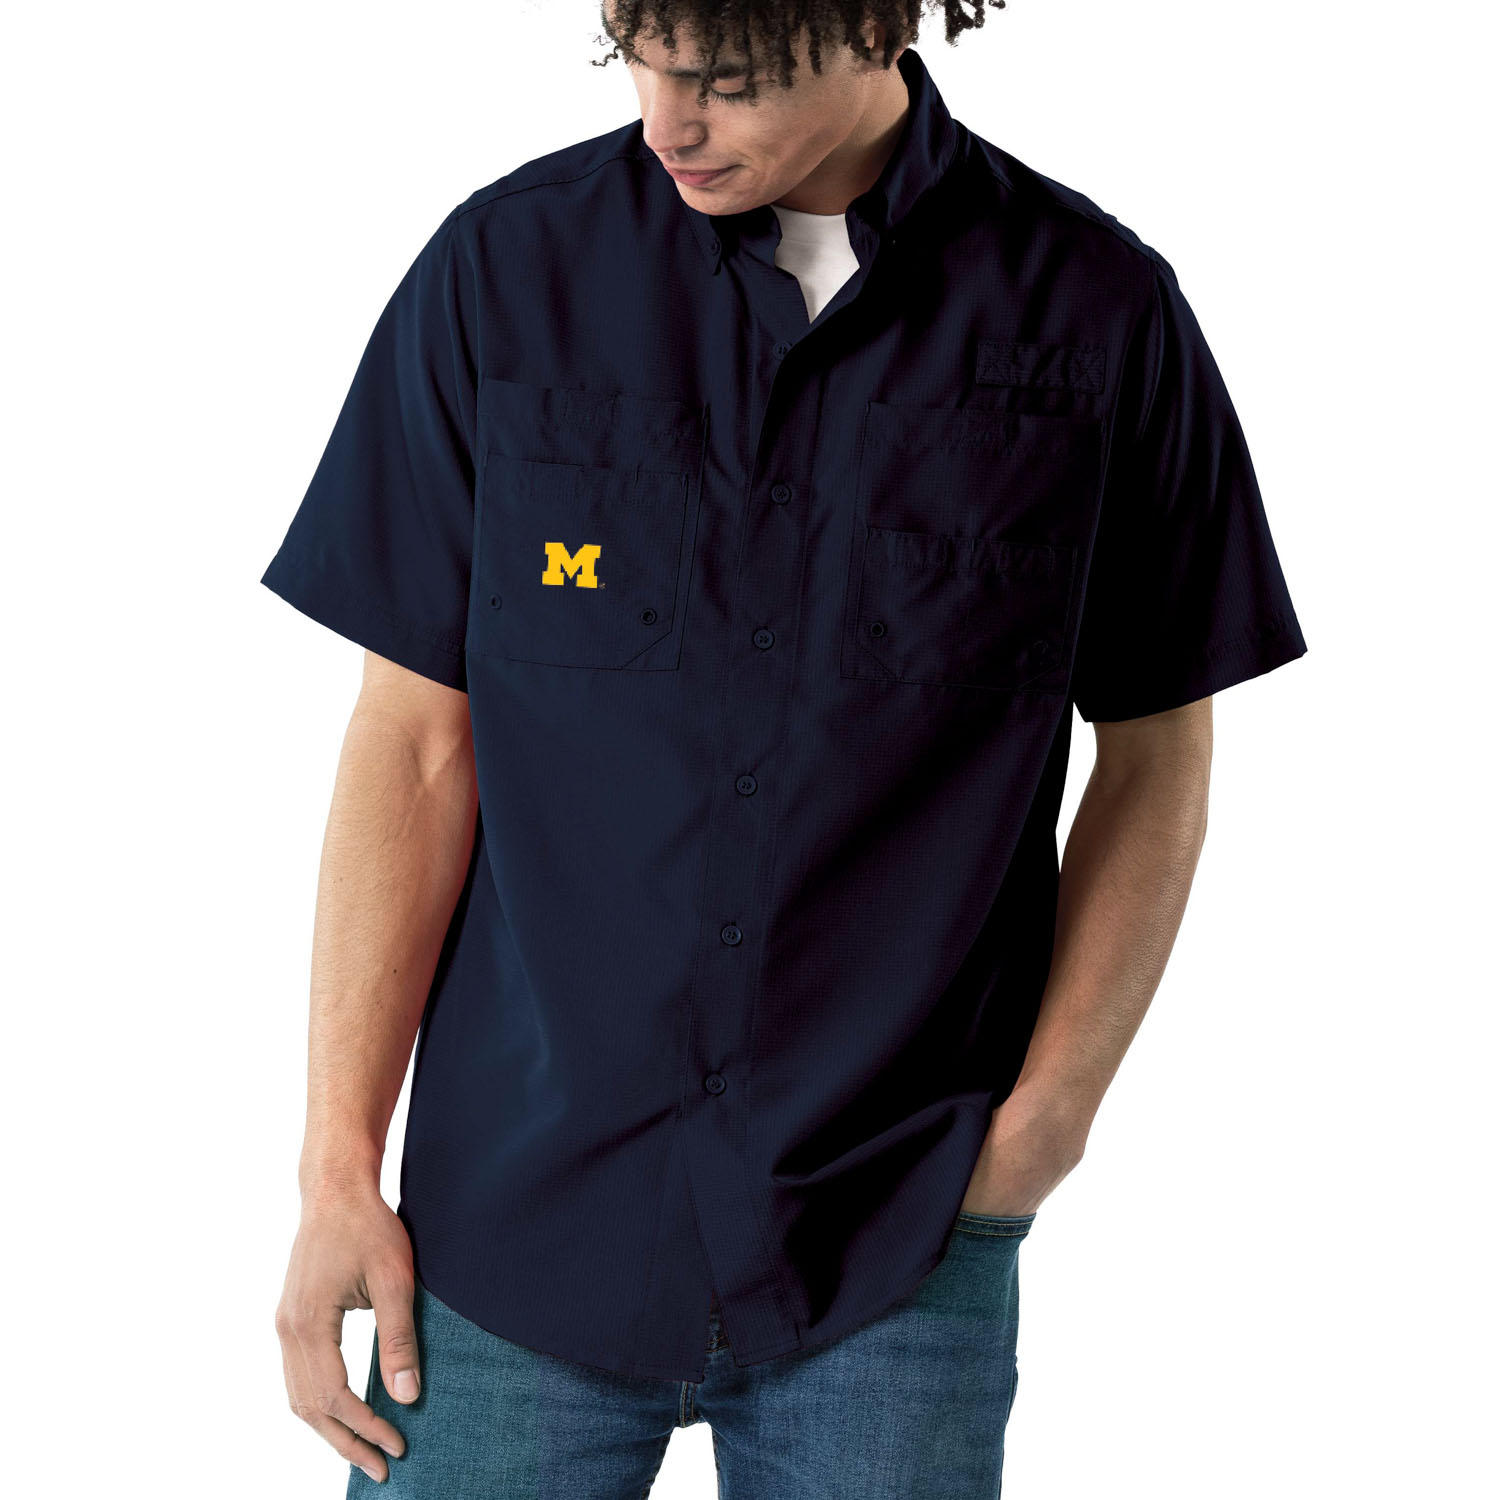 Knights Apparel NCAA River Shirt- Michigan Wolverines/ XL